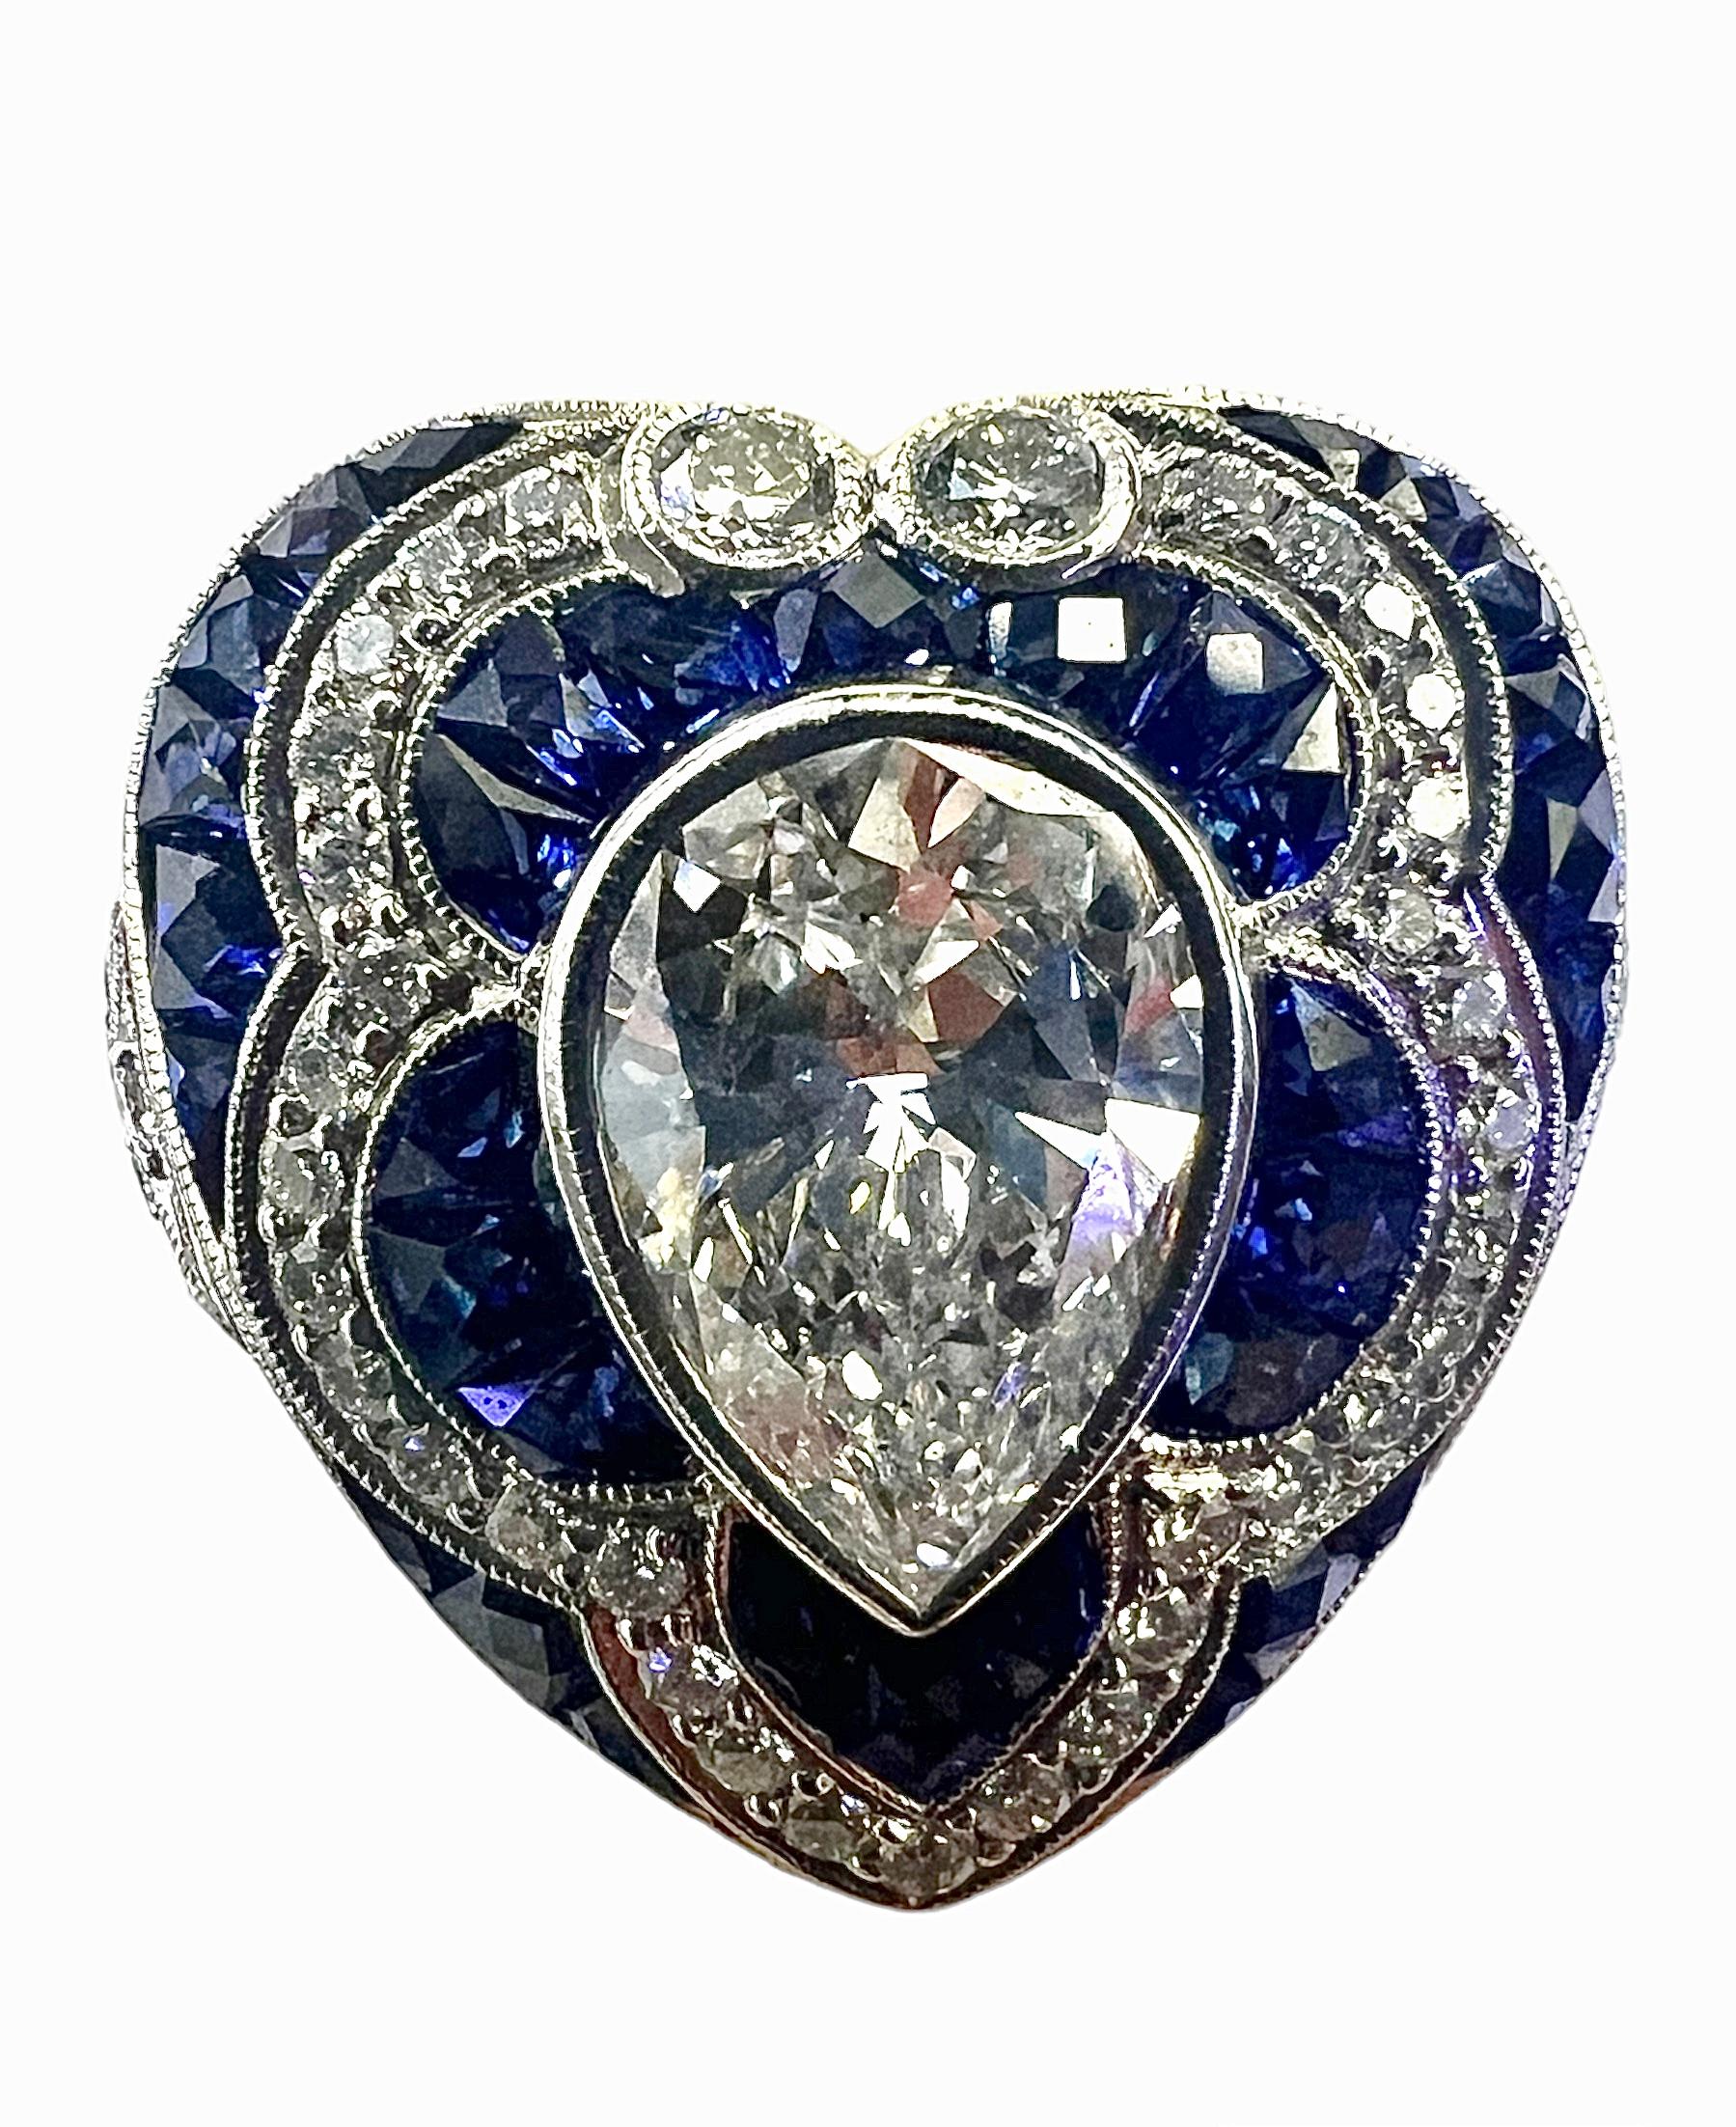 Cette bague en platine d'inspiration art déco, conçue et fabriquée à la main par Sophia D Art, est ornée d'un diamant central en forme de poire de 1,20 carat, rehaussé de petits diamants de 0,30 carat et d'un saphir bleu de 1,20 carat.

Sophia D by